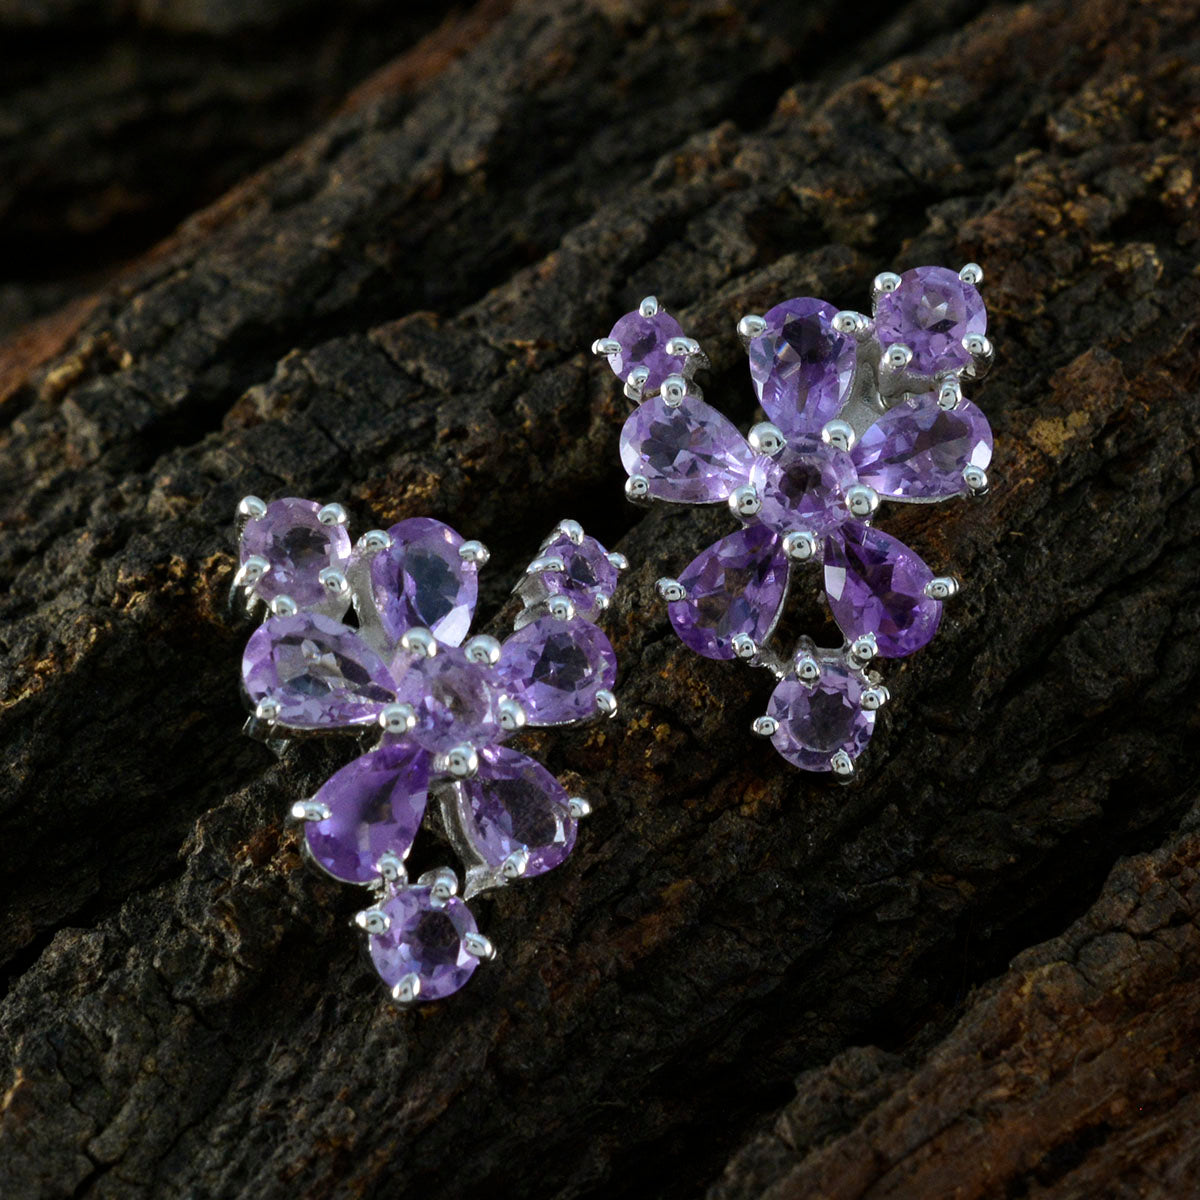 Riyo Appealing 925 Sterling Silver Earring For Demoiselle Amethyst Earring Bezel Setting Purple Earring Stud Earring